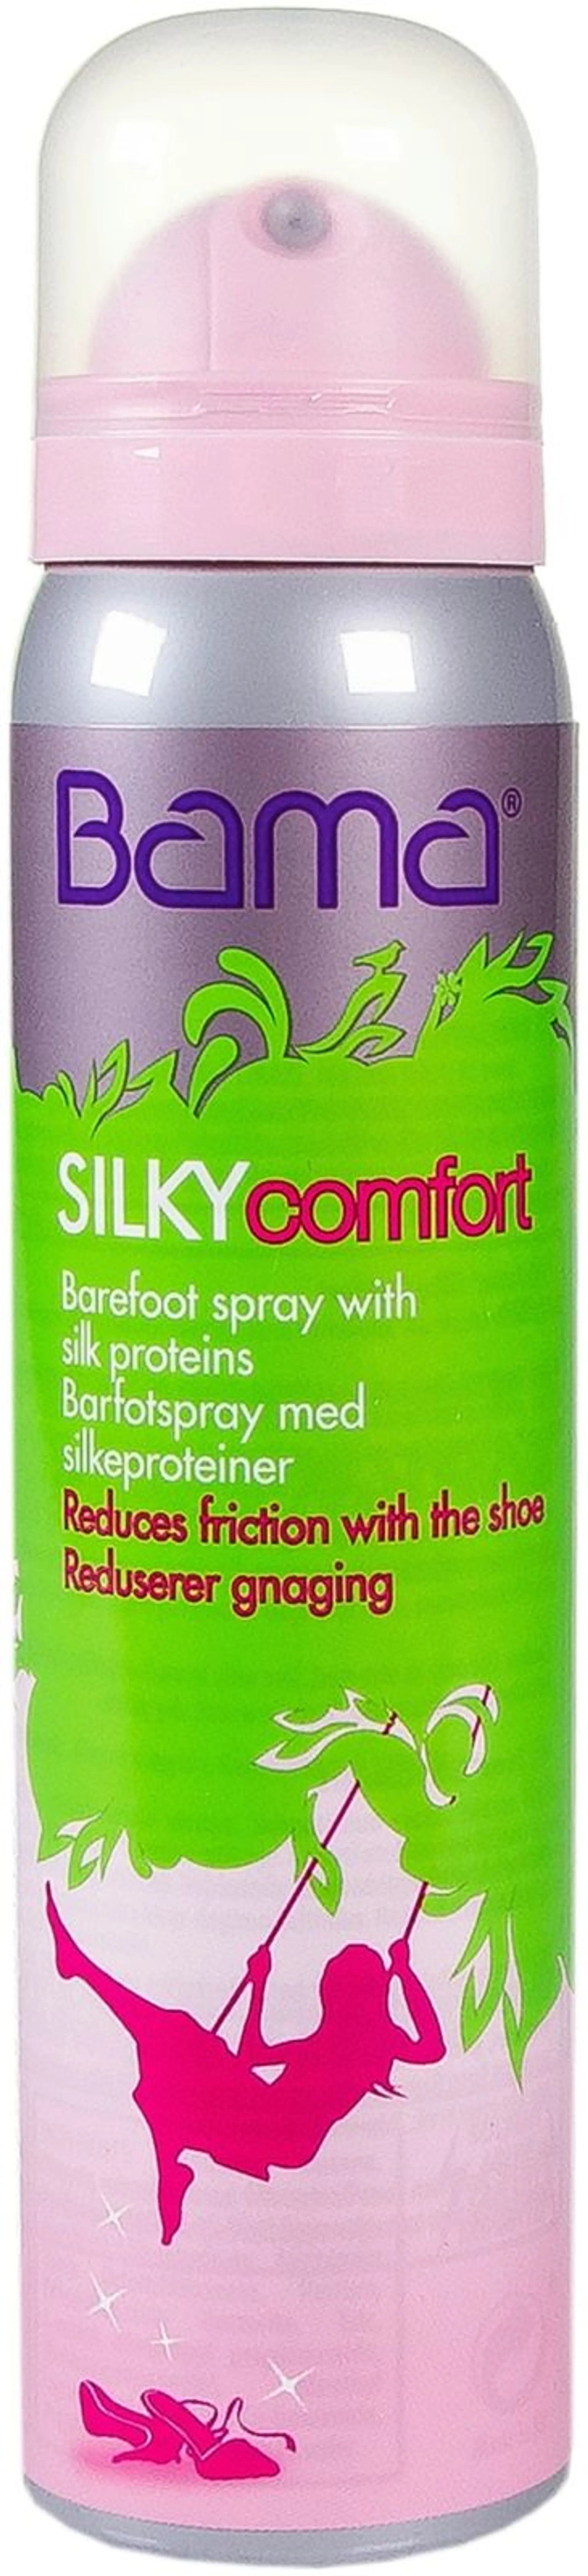 Bama Silky Comfort - Bama Silky Feet 100ml